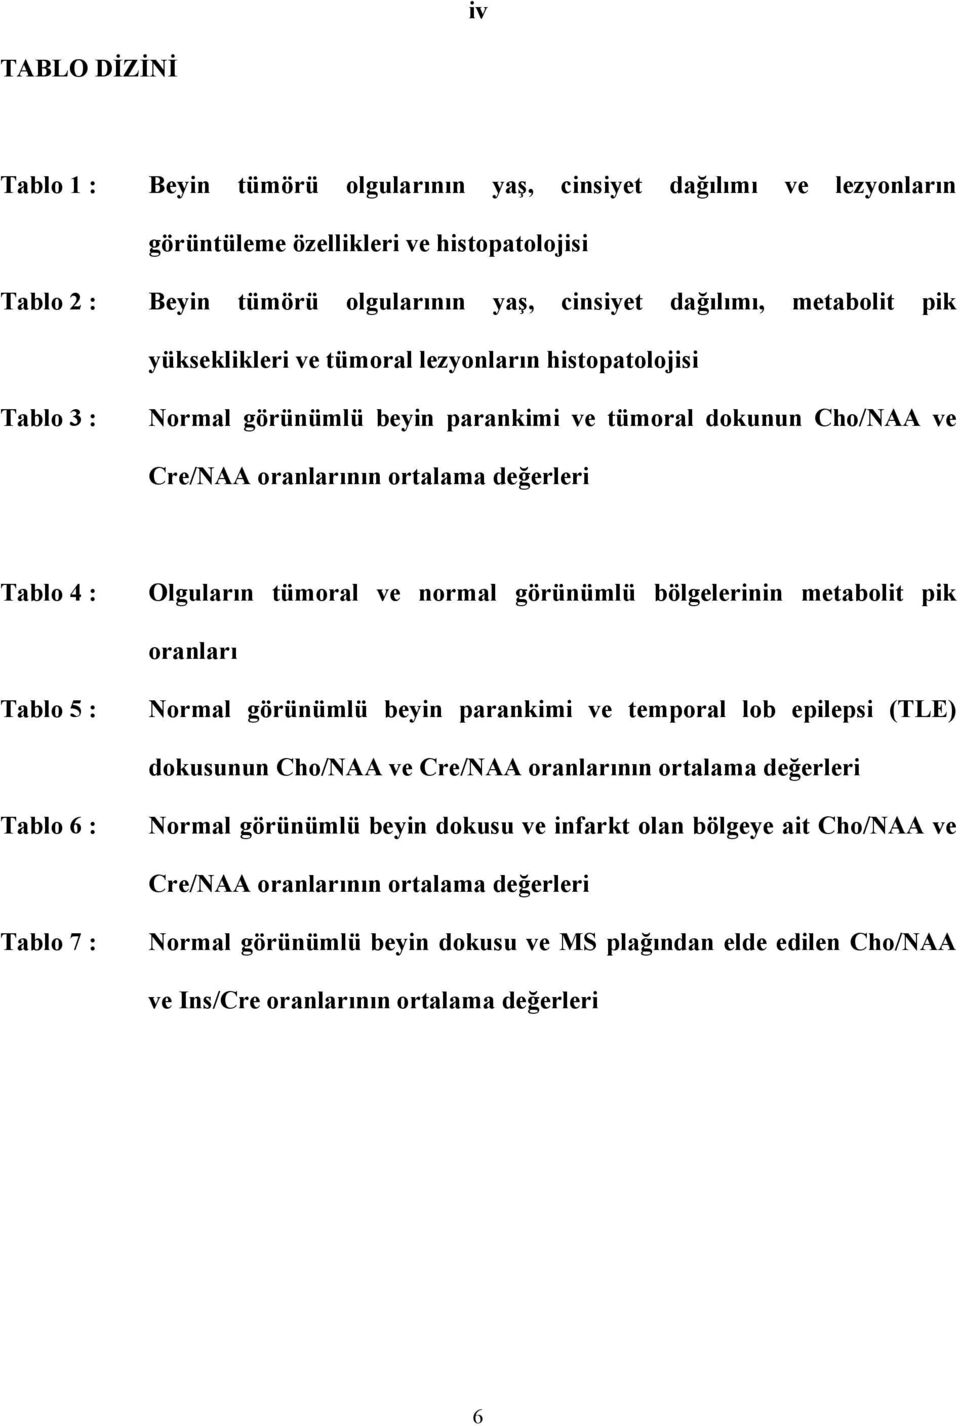 tümoral ve normal görünümlü bölgelerinin metabolit pik oranları Tablo 5 : Normal görünümlü beyin parankimi ve temporal lob epilepsi (TLE) dokusunun Cho/NAA ve Cre/NAA oranlarının ortalama değerleri